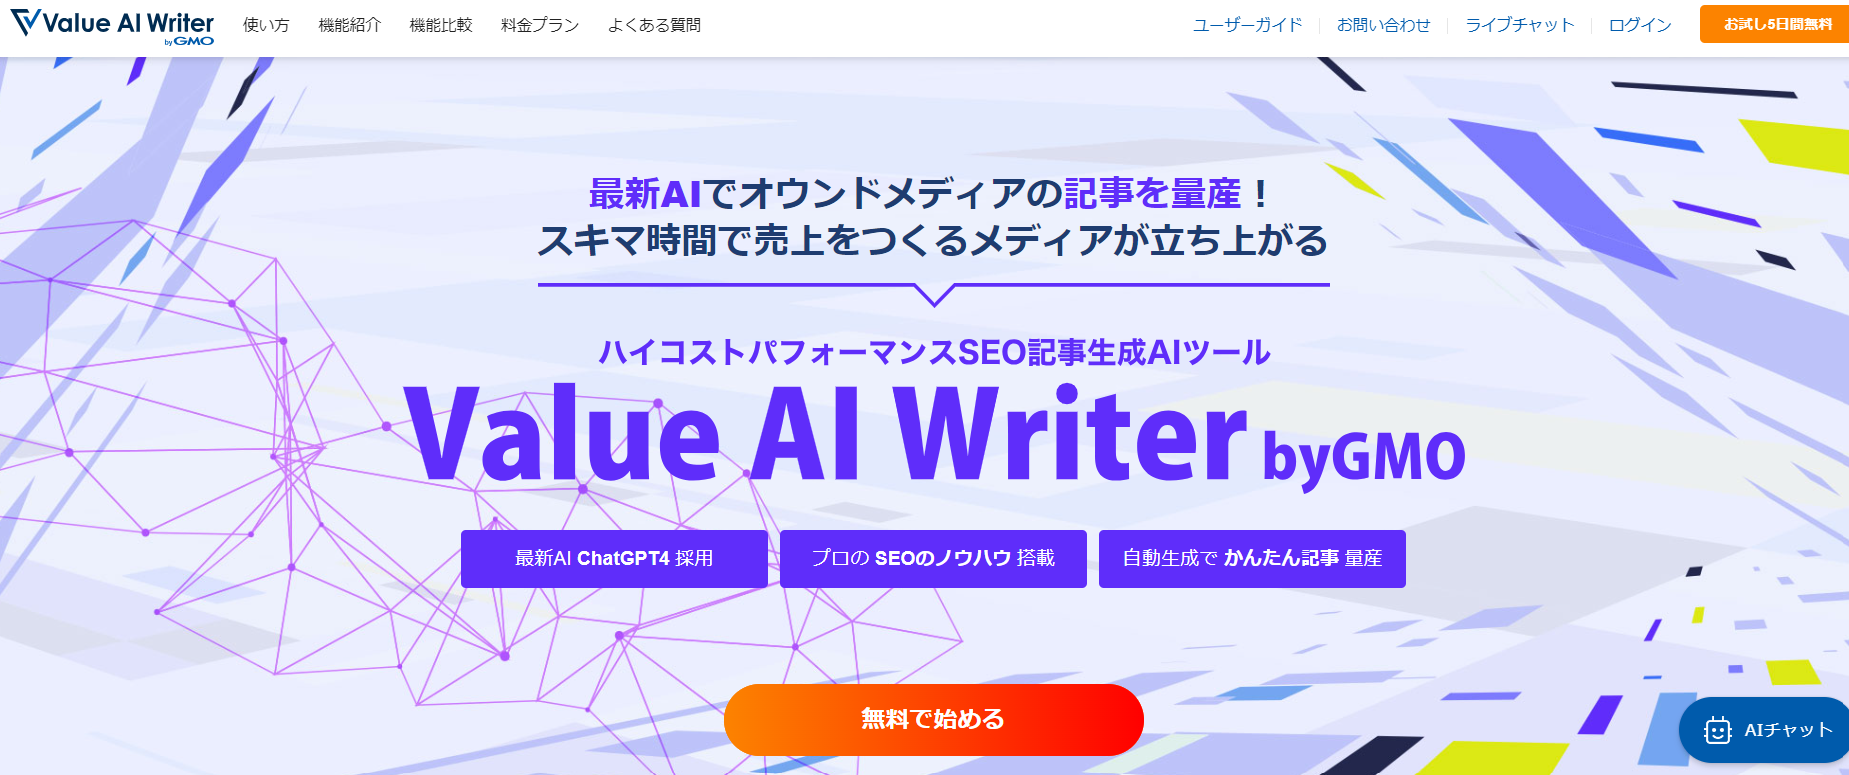 14.Value-AI-Writer-byGMO